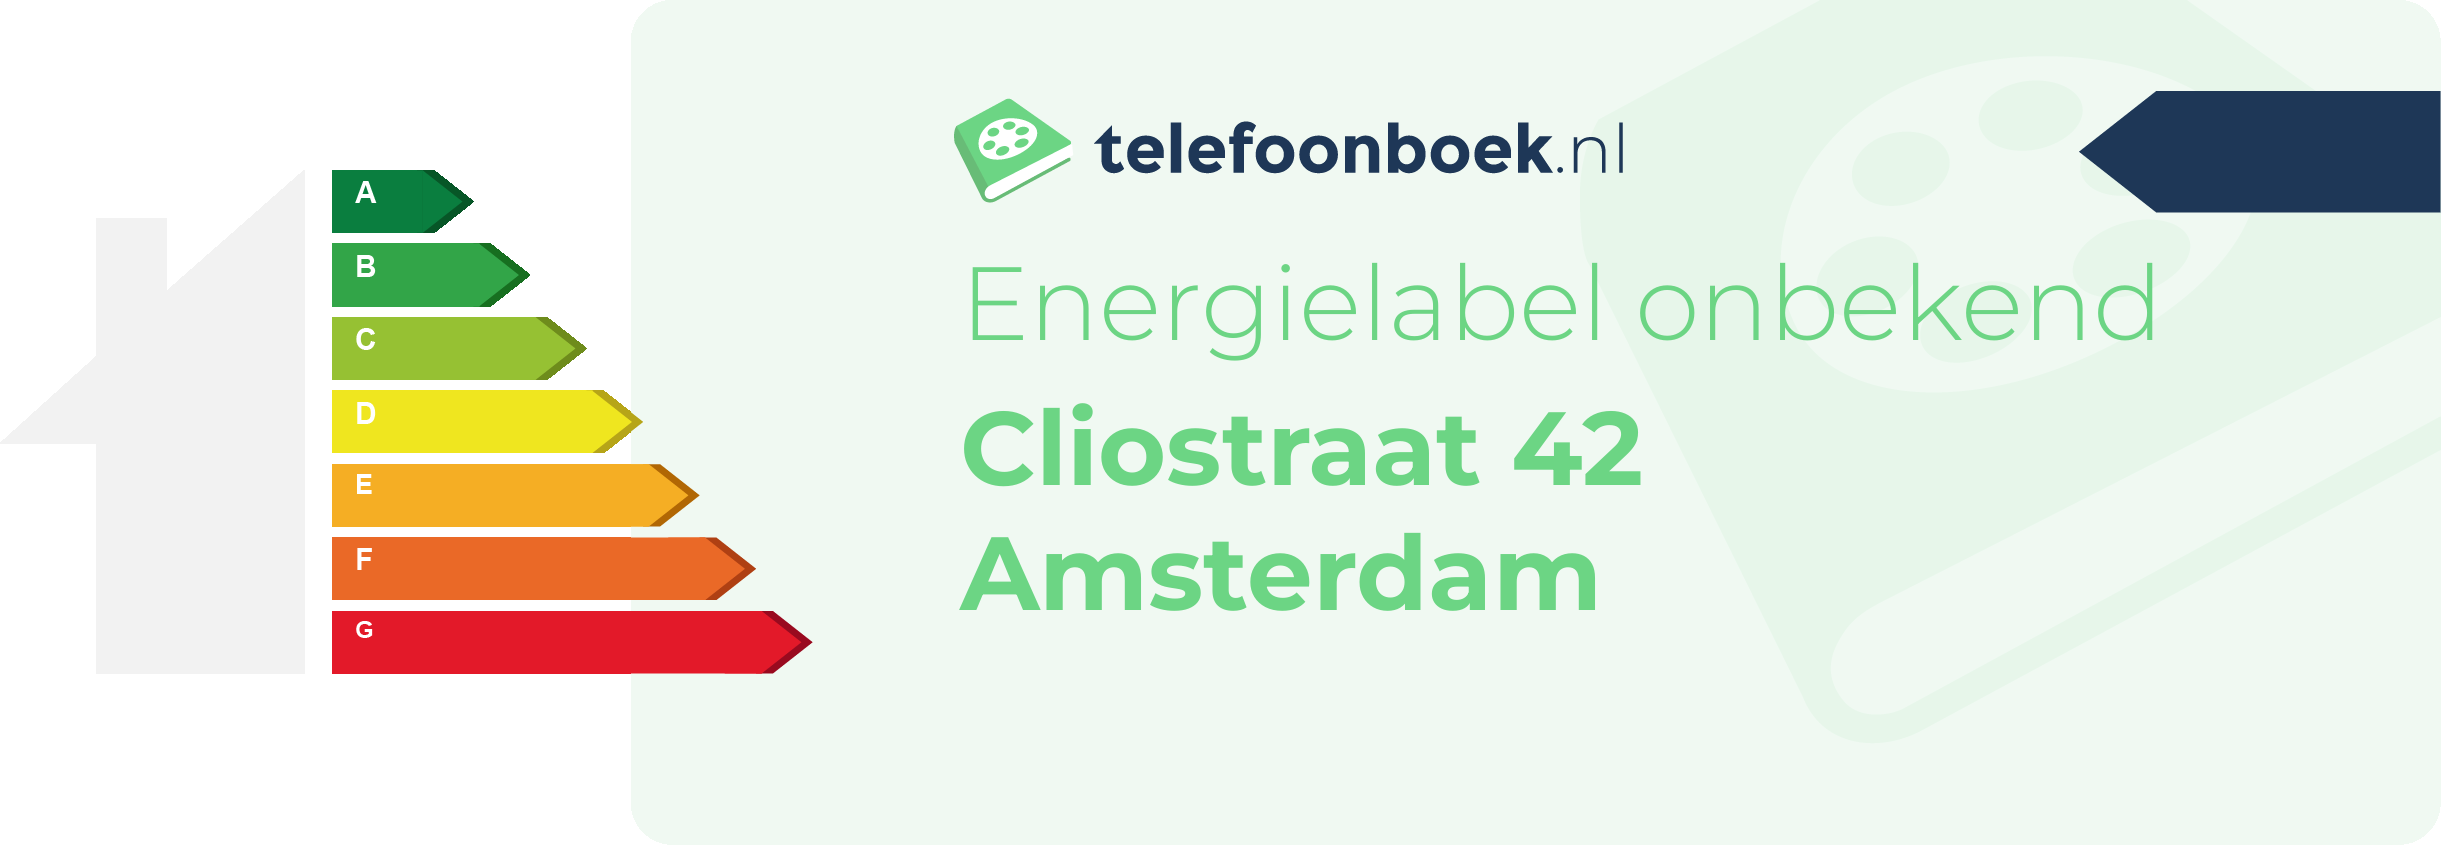 Energielabel Cliostraat 42 Amsterdam